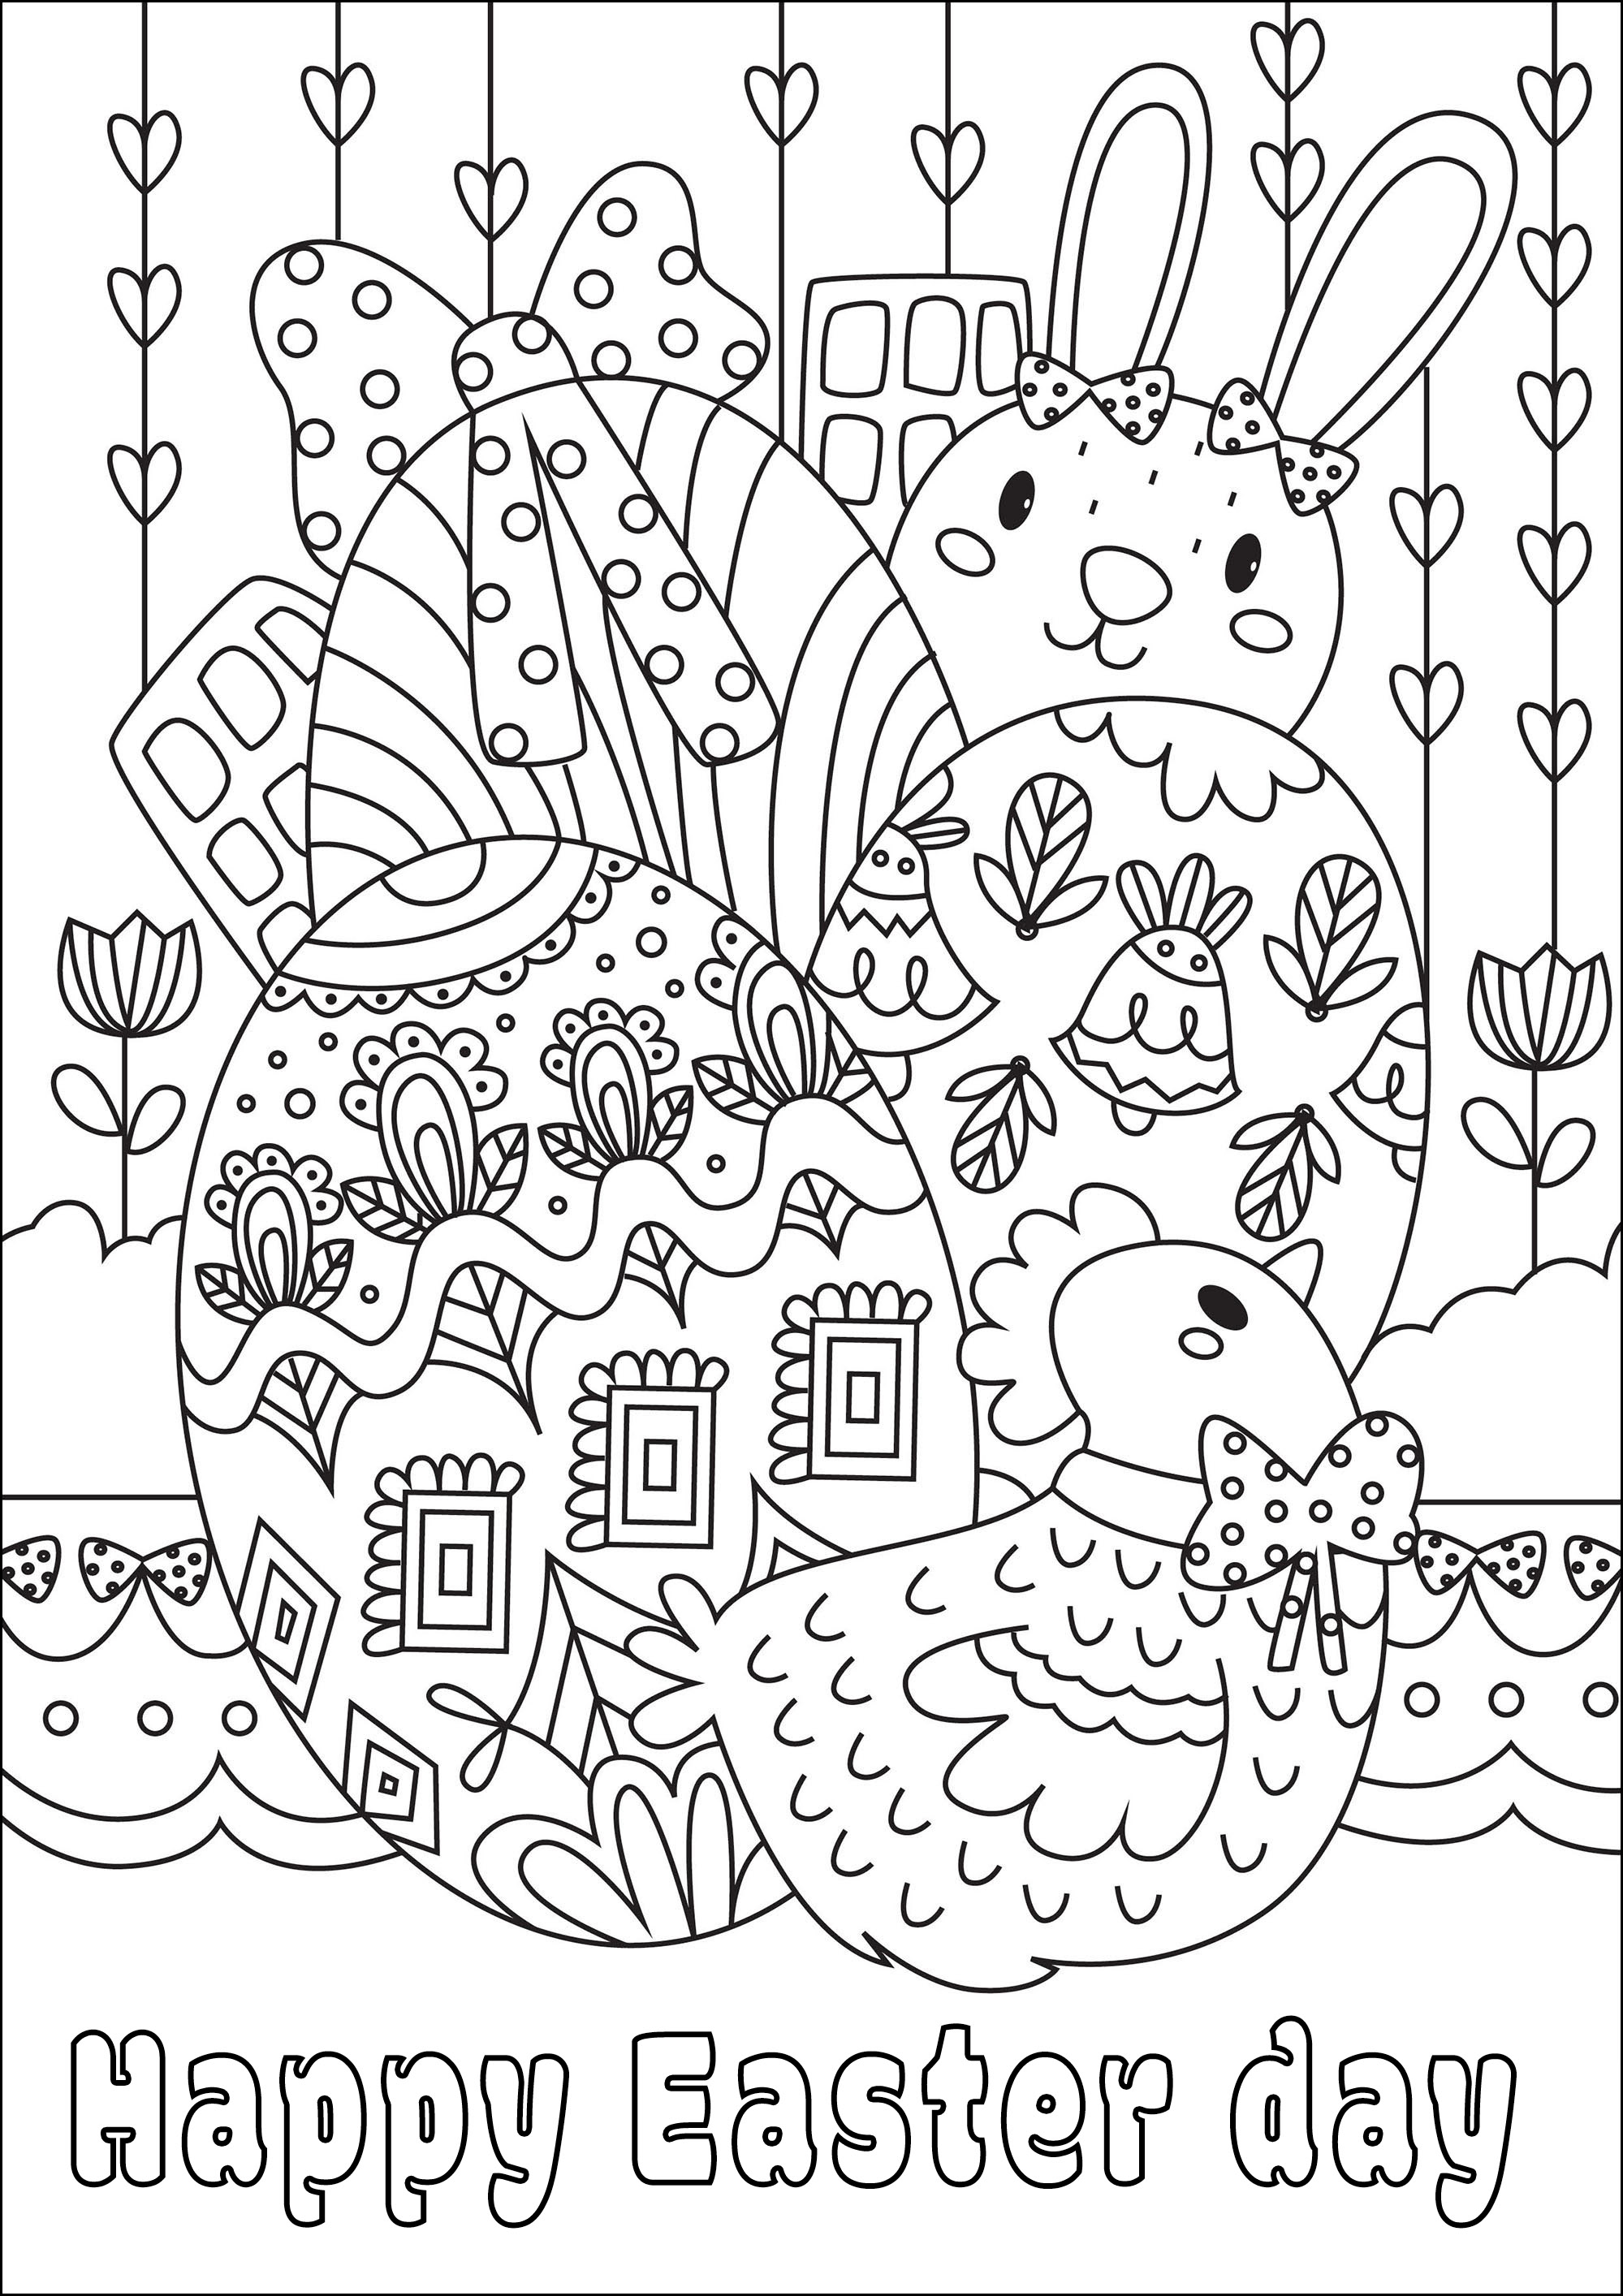 Pascua para colorear. Una bonita página para colorear con bonitos huevos, un conejo y una gallina, Artista : Gaelle Picard